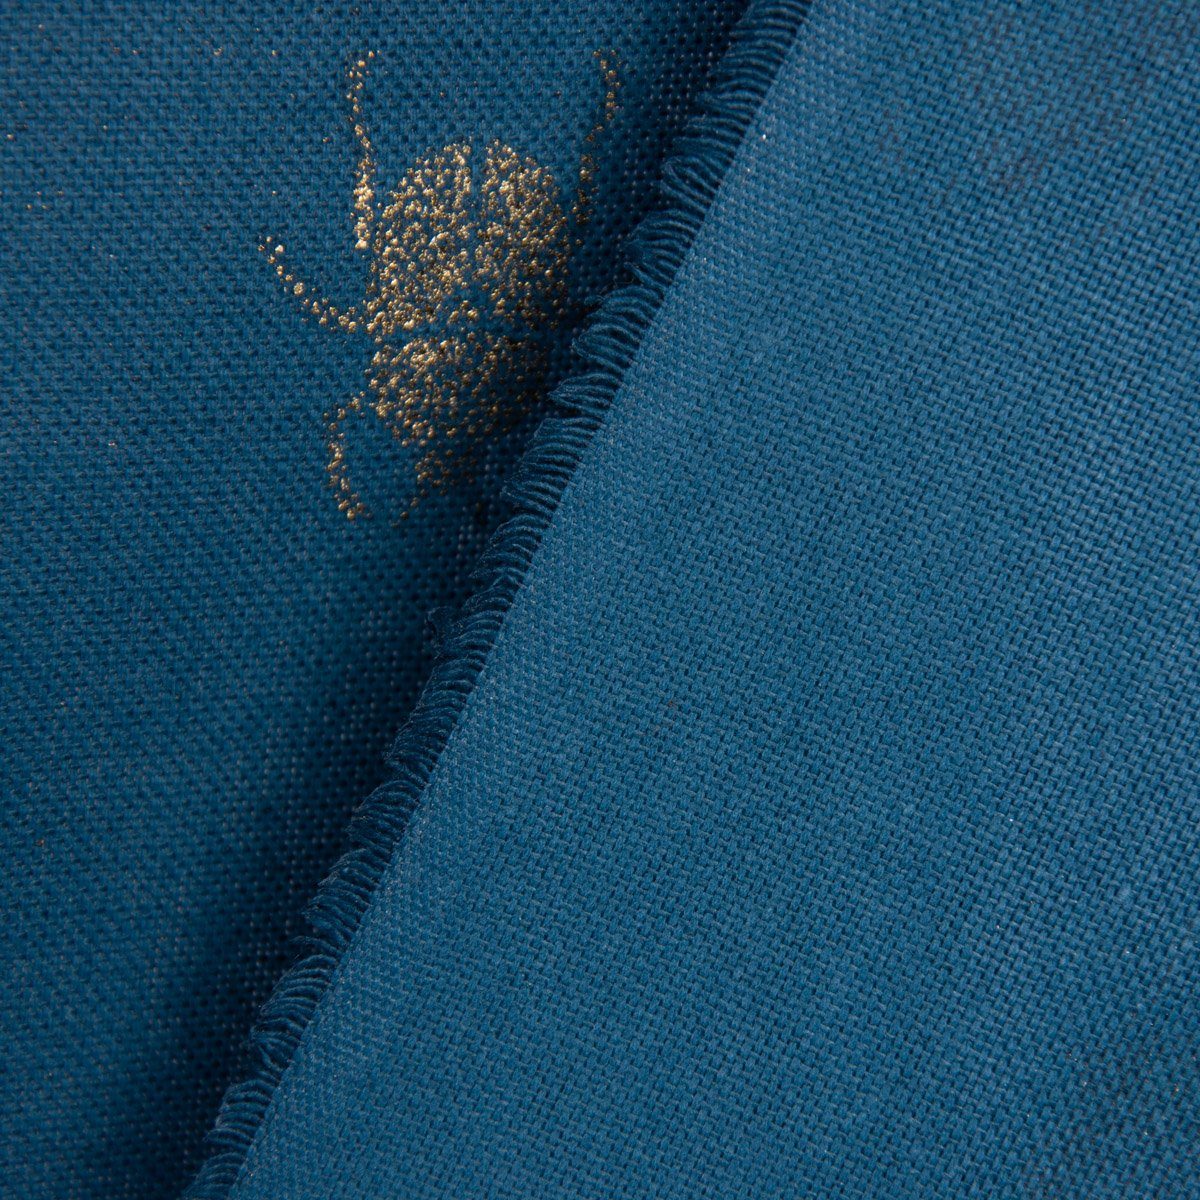 SCHÖNER gold Tischläufer blau handmade Käfer LEBEN. LEBEN. Tischläufer metallic SCHÖNER 40x160cm,